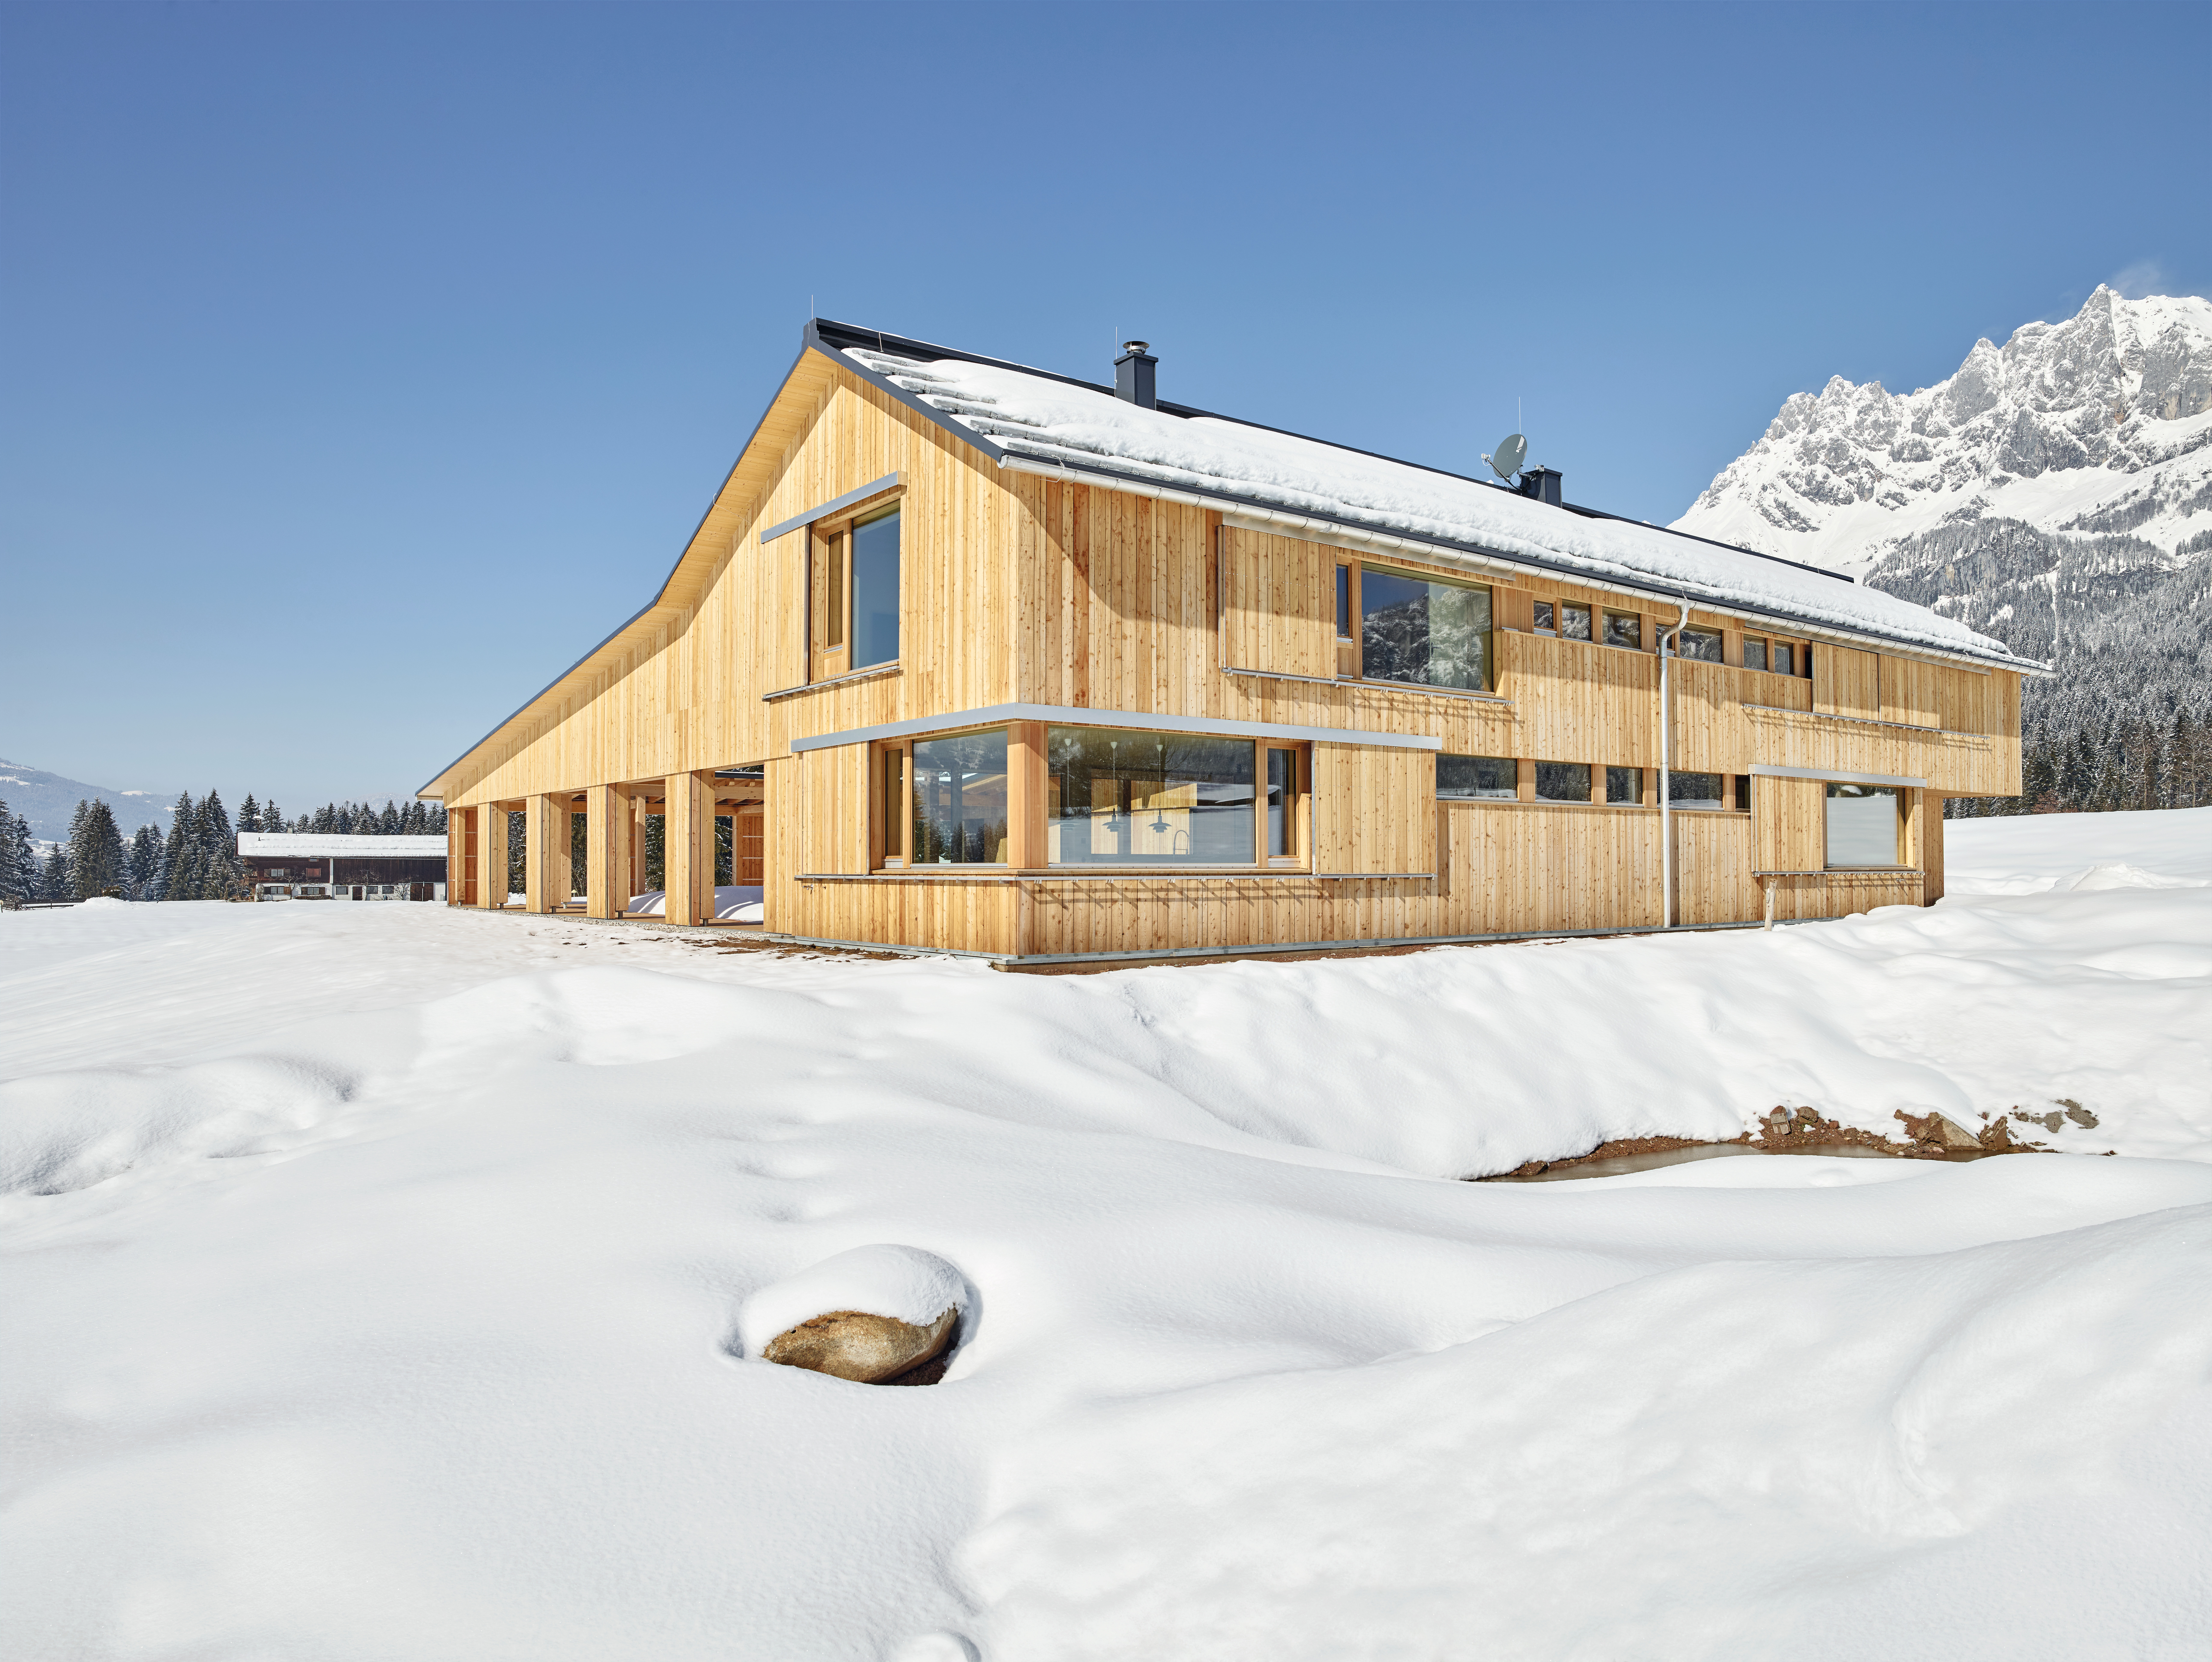 Дом построен с применением деревянных конструкций и двухскатной крышей